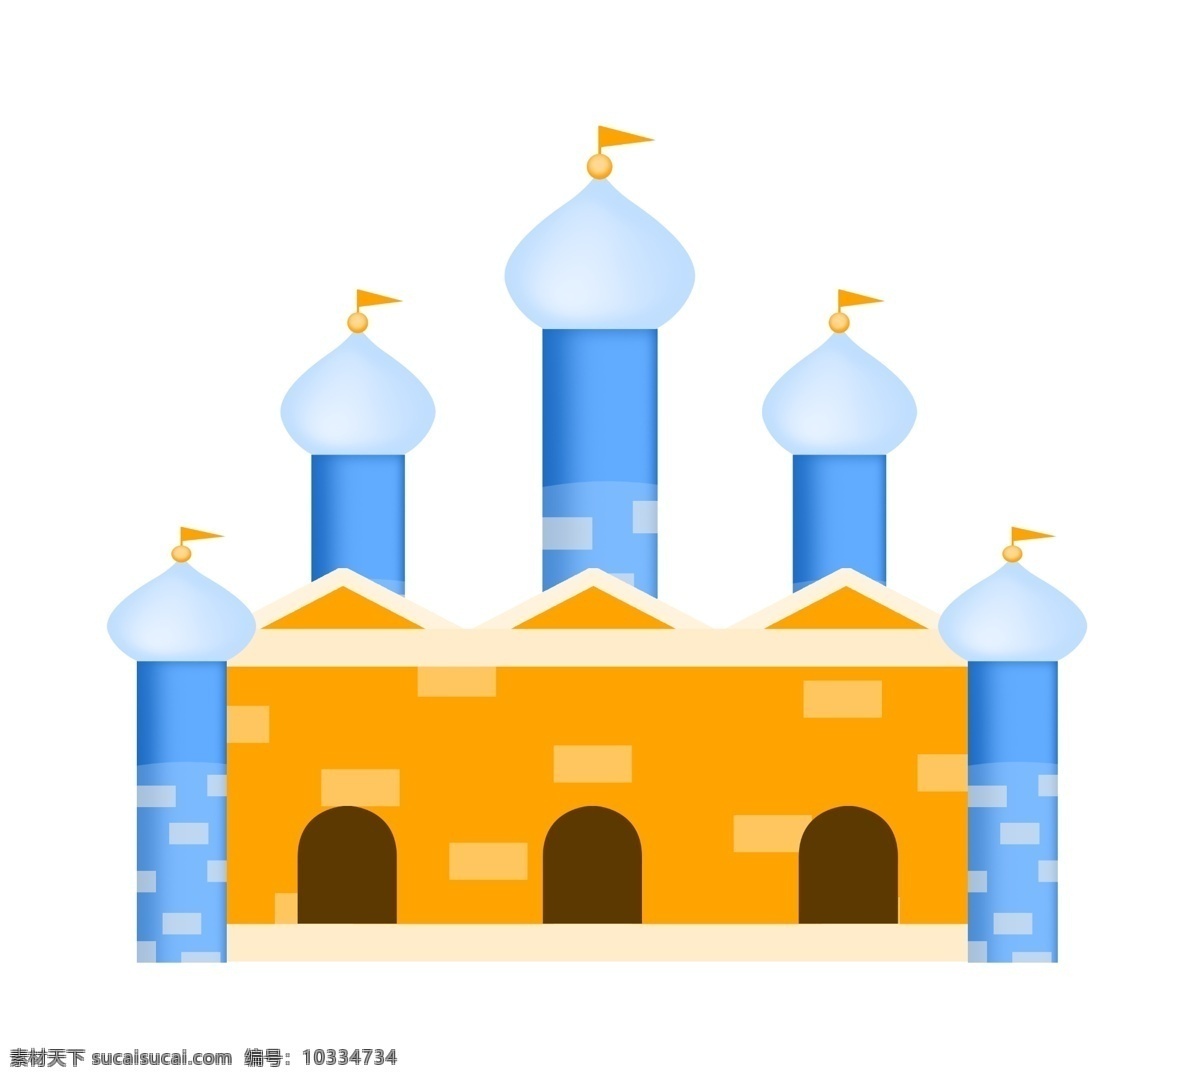 一座 城堡 建筑物 插画 建筑 蓝色城堡 房屋 欧式城堡 橙色 蓝色 一座城堡 城堡建筑物